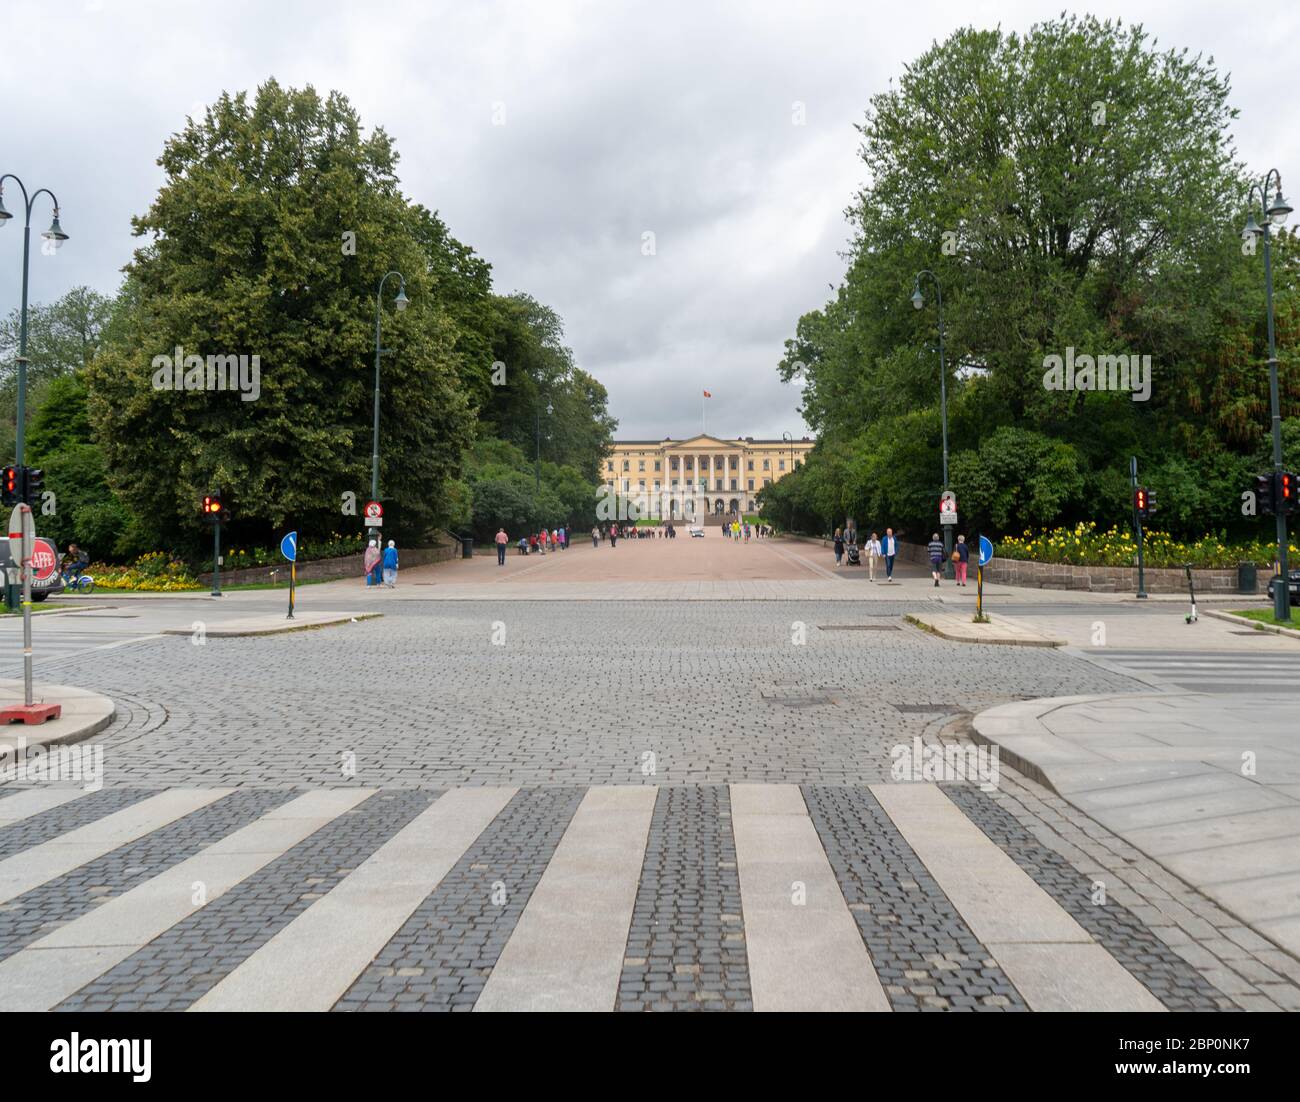 La strada e l'attraversamento pedonale di fronte al Palazzo reale di Oslo, Norvegia. Agosto 2019 Foto Stock